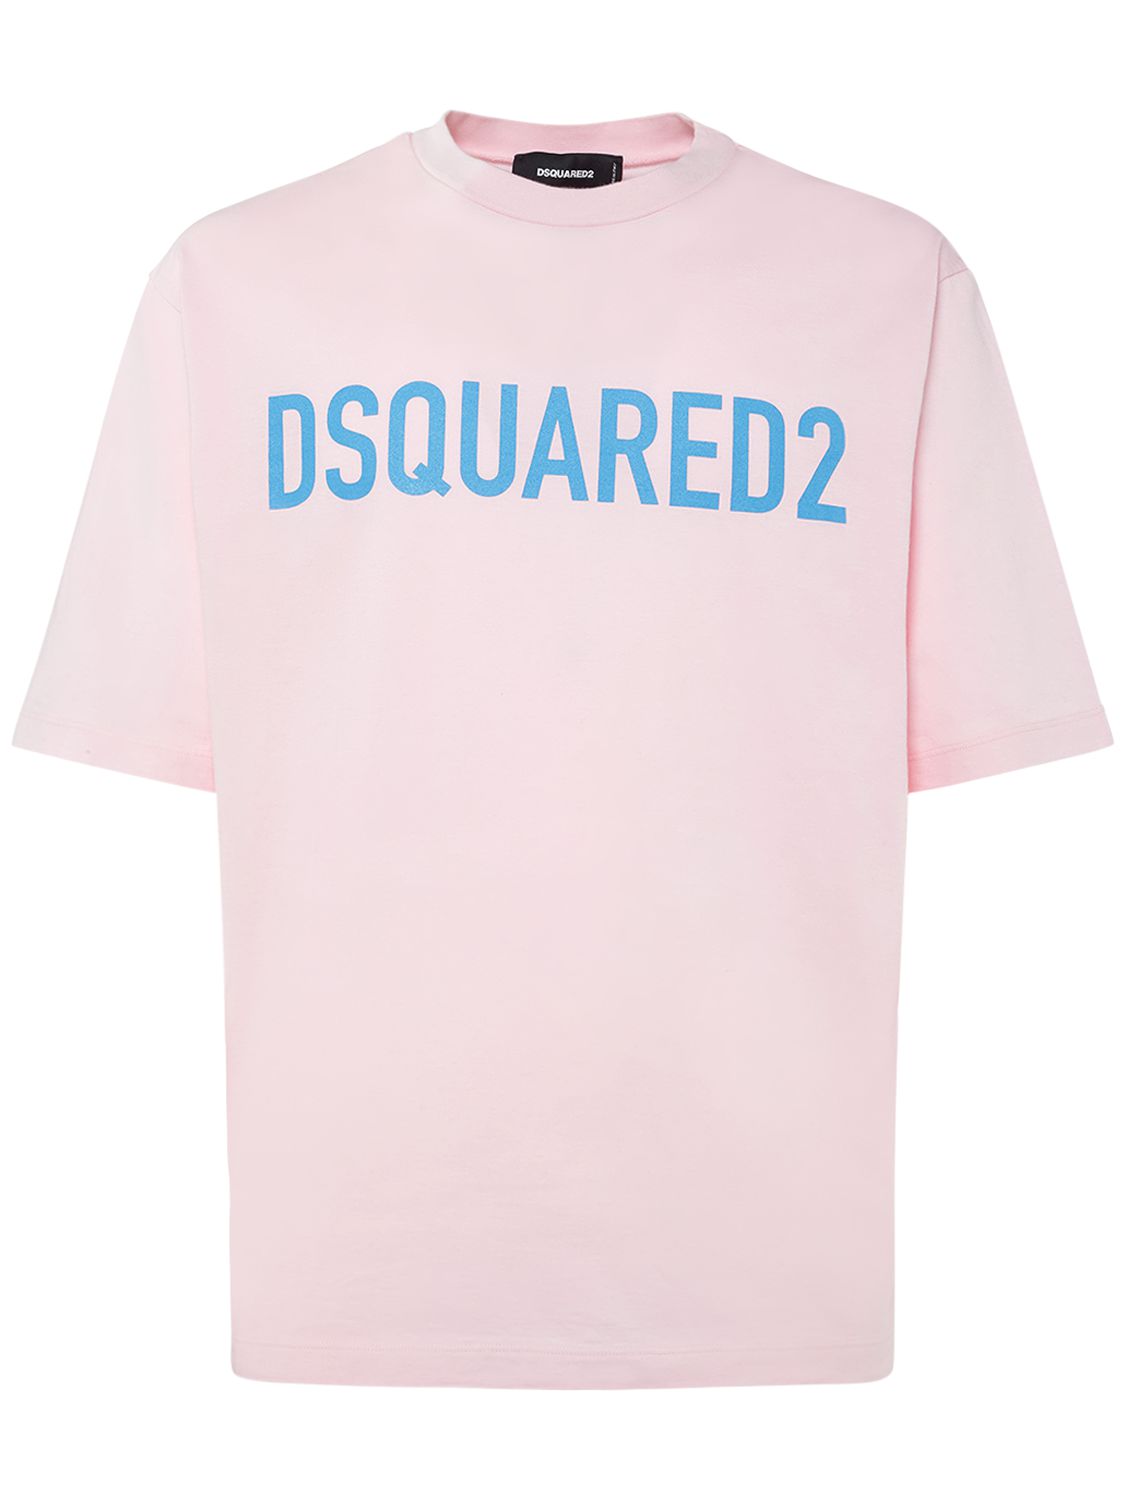 T-shirt Loose Fit In Cotone Con Logo - DSQUARED2 - Modalova